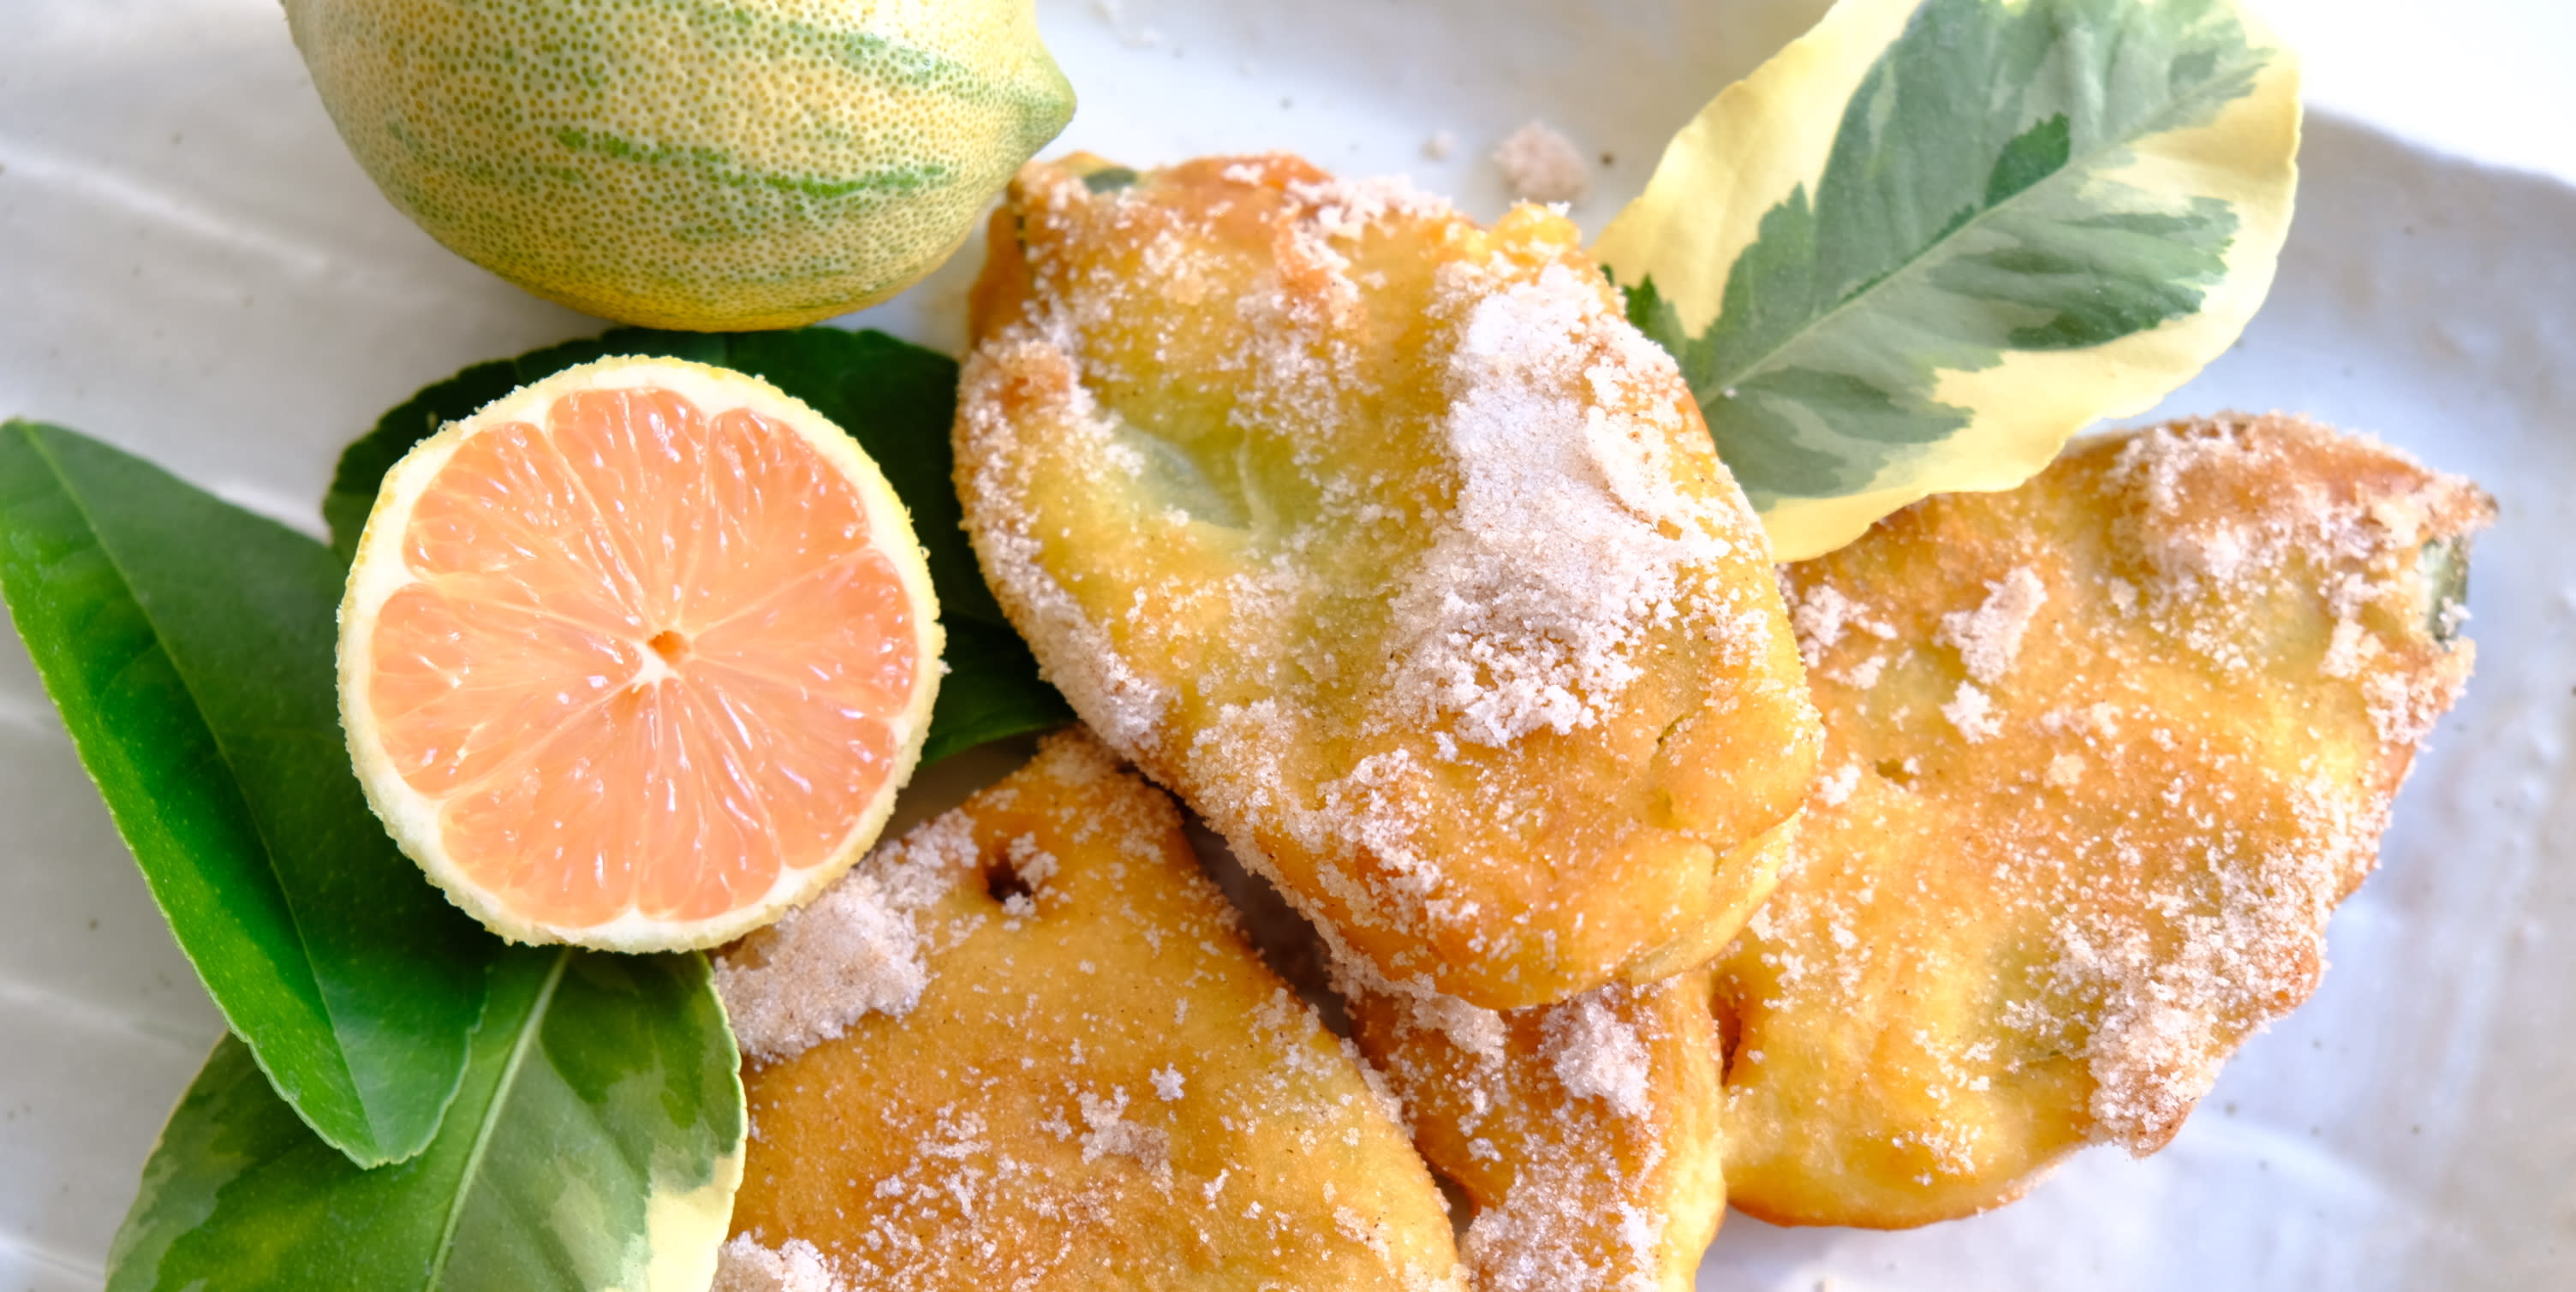 美味しい可愛い「レモンの葉っぱドーナツ」。スペインのレシピをご紹介